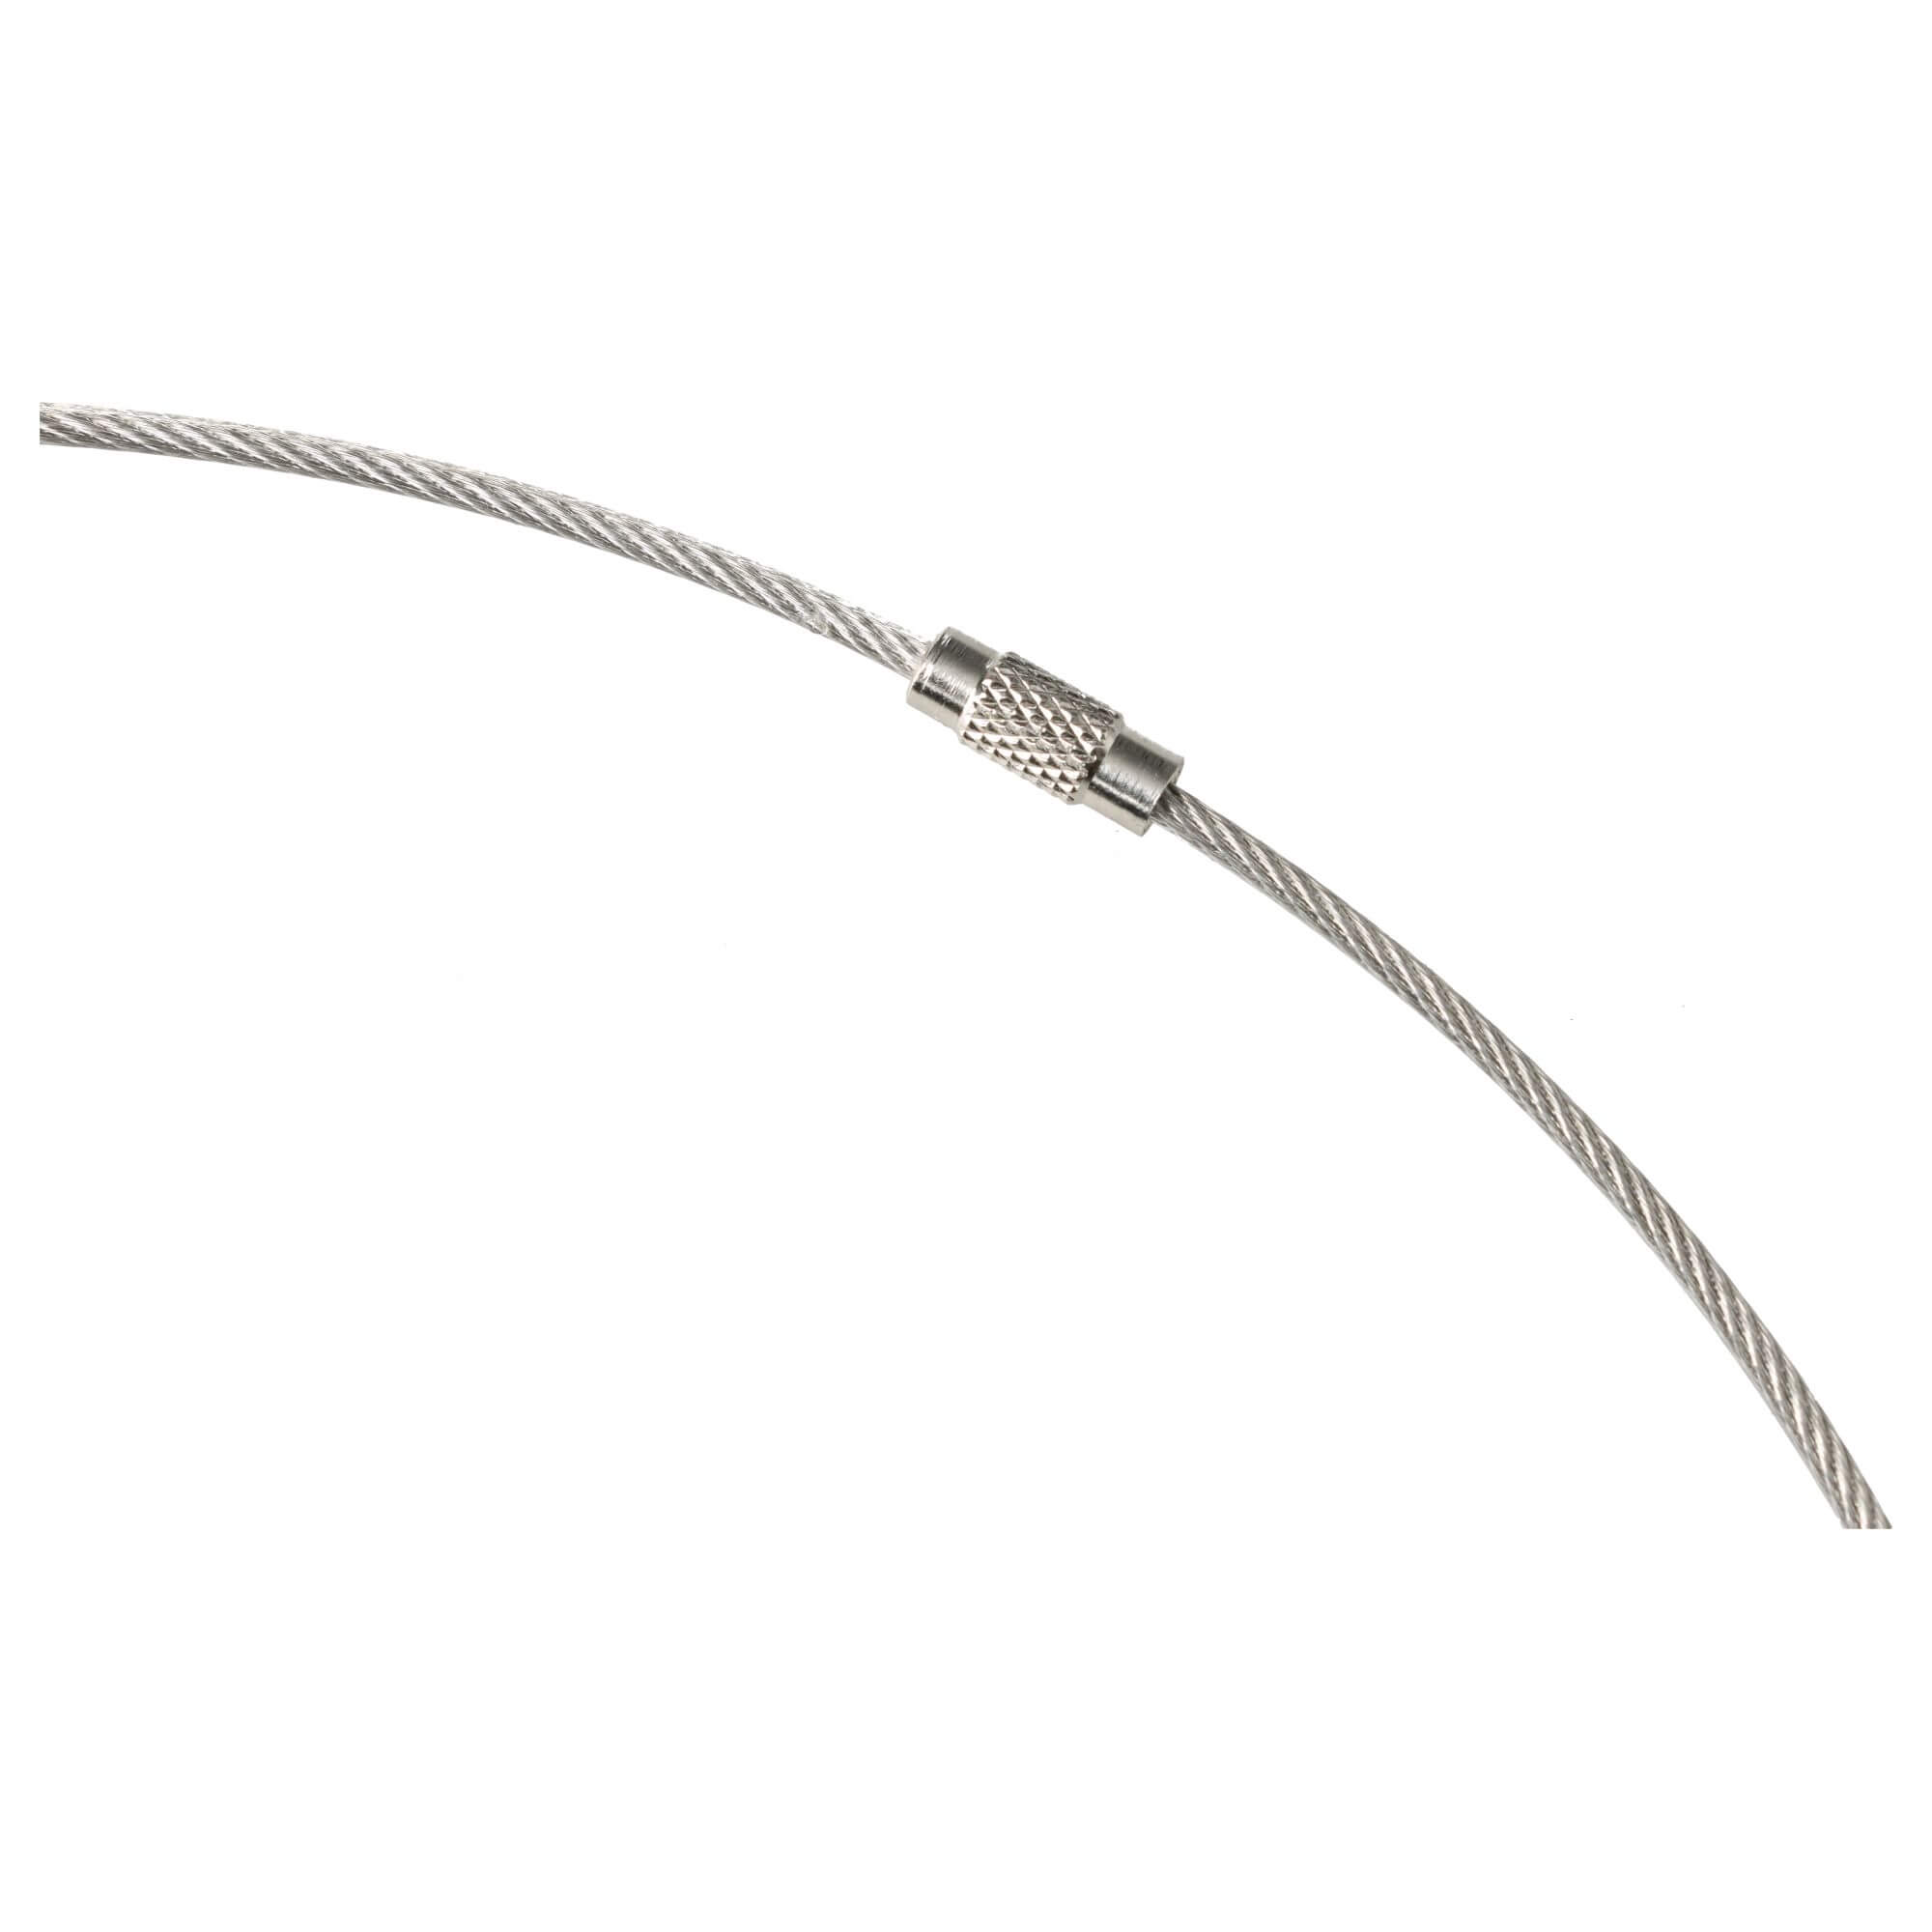 Cuerda metálica para encuadernación de muestrarios Ø200mm 1mm/2mm x 630mm acero inoxidable funda de PVC transparente